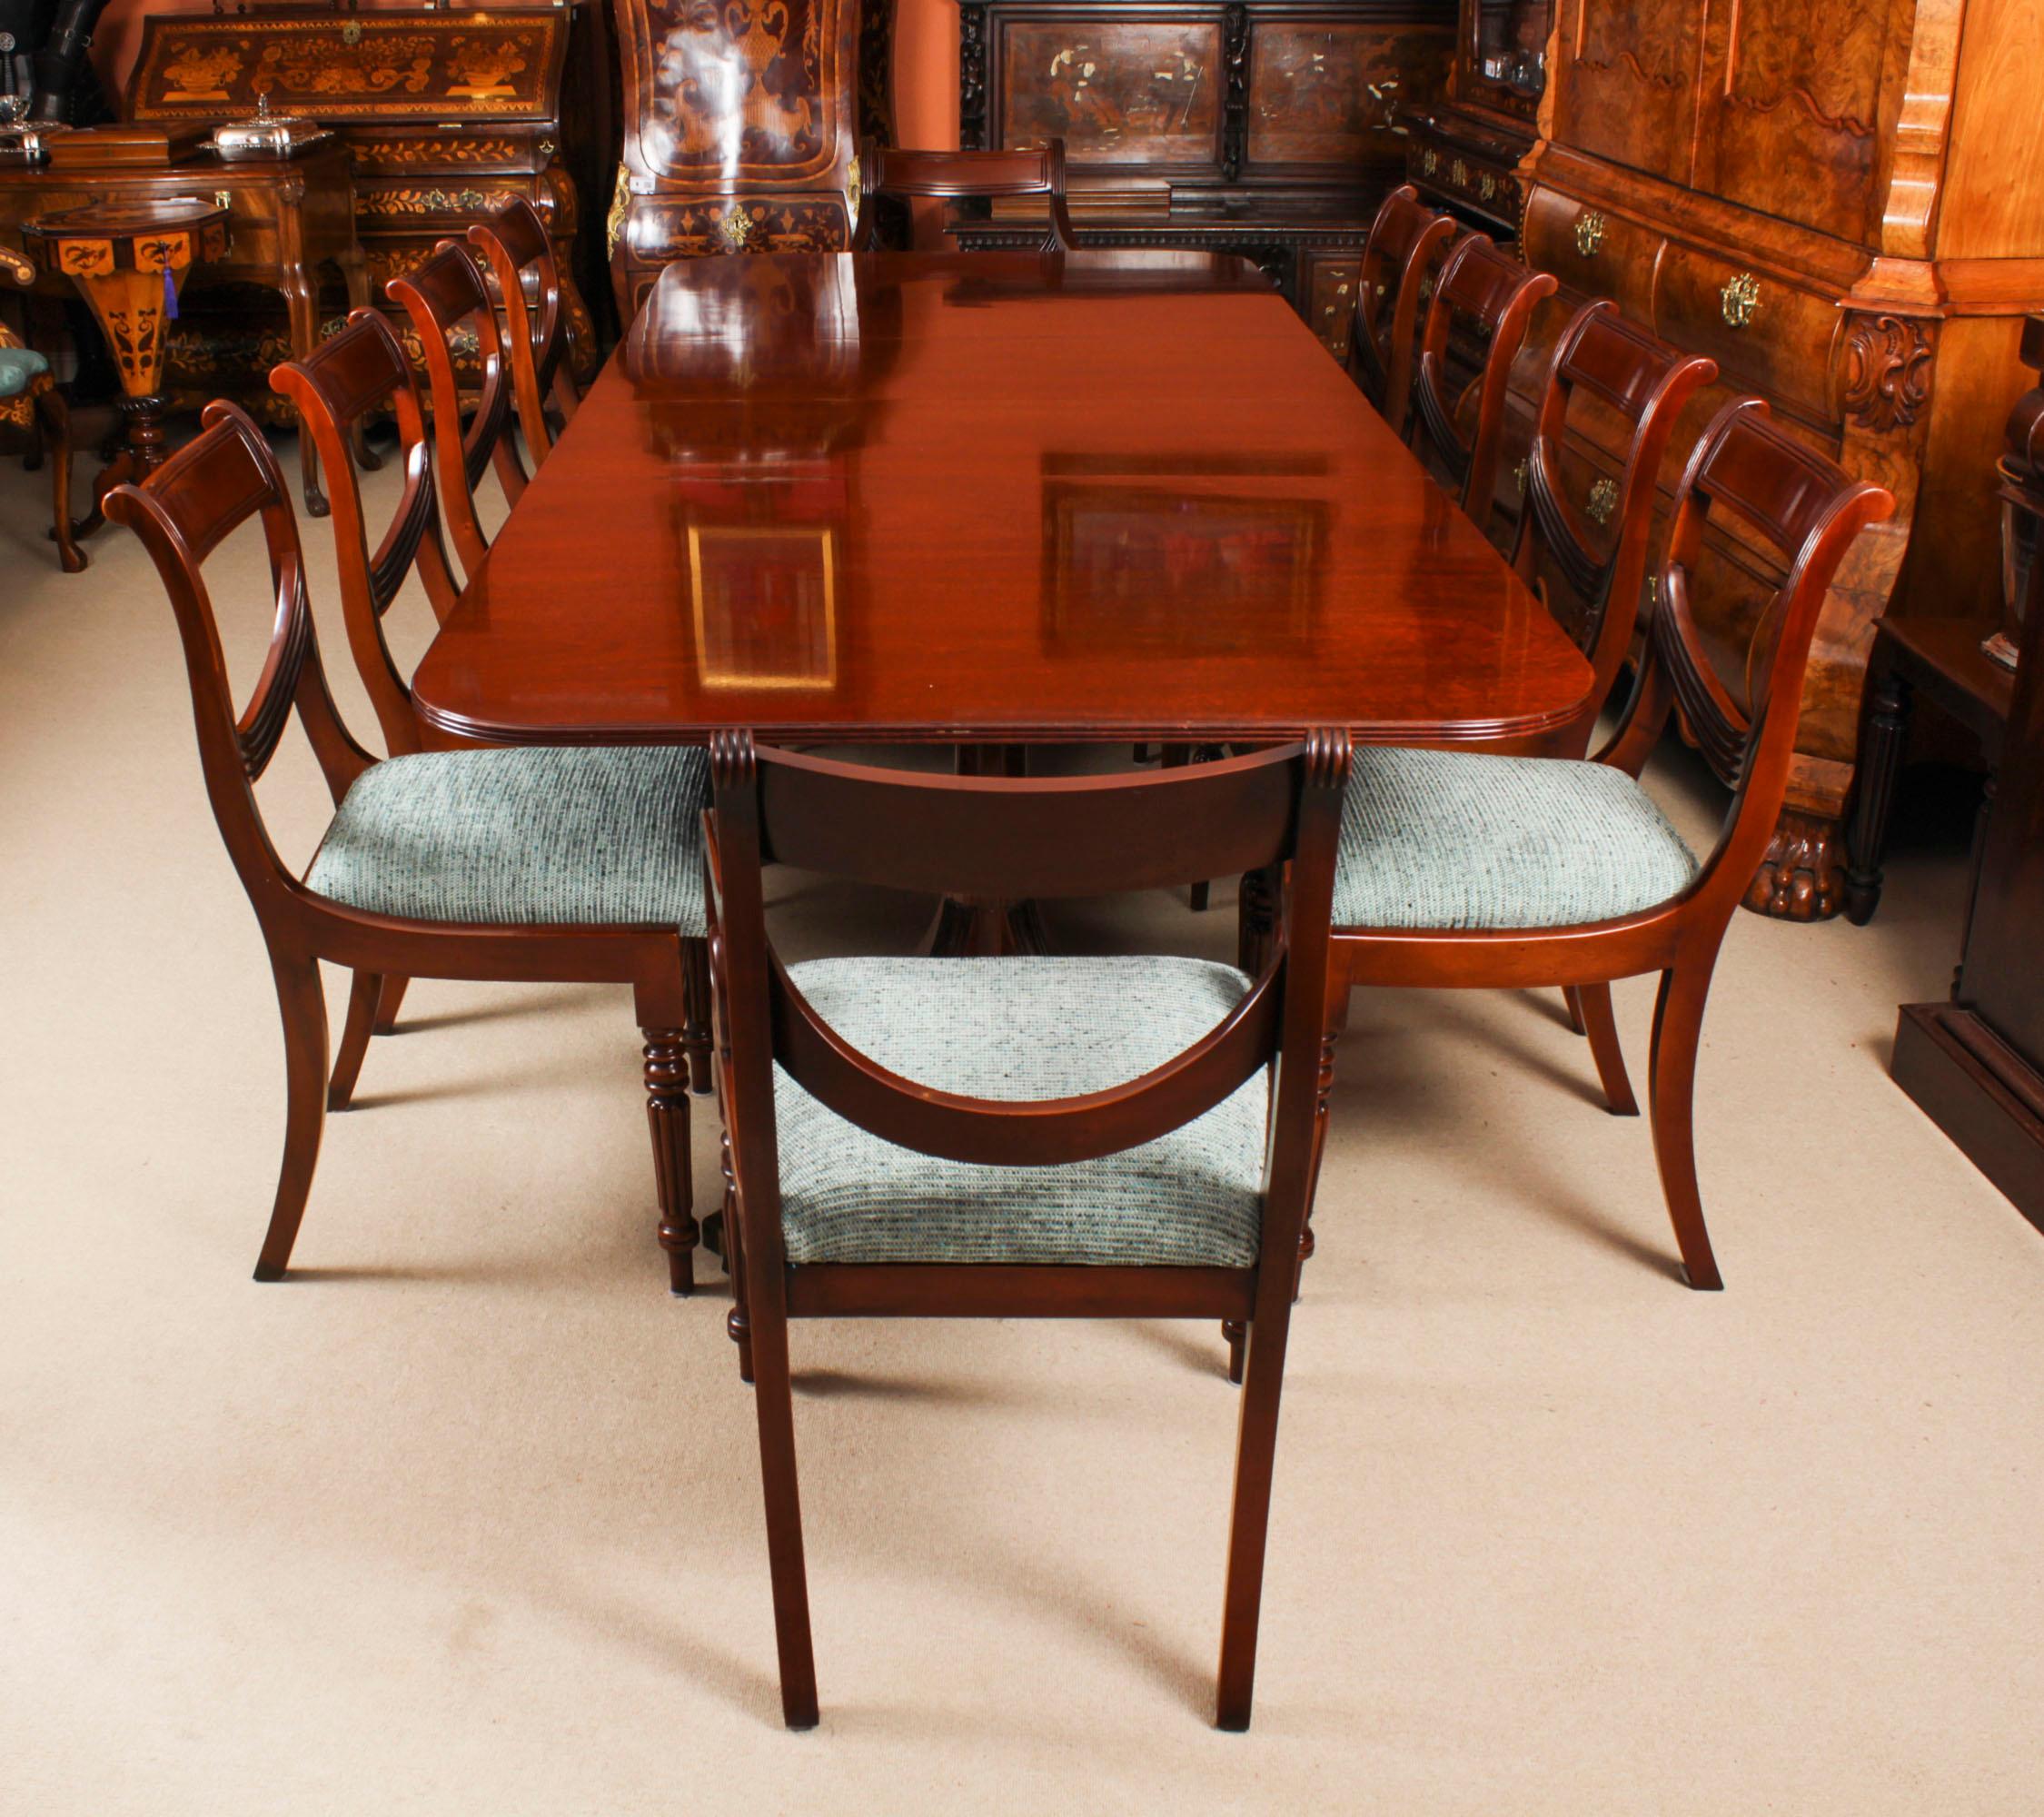 Il s'agit de  un fabuleux ensemble de salle à manger Vintage Regency Revival comprenant un  et un ensemble de dix chaises de salle à manger Swag Back,  par le maître artisan, William Tillman, Circa 1980 en date.

La table est fabriquée en acajou